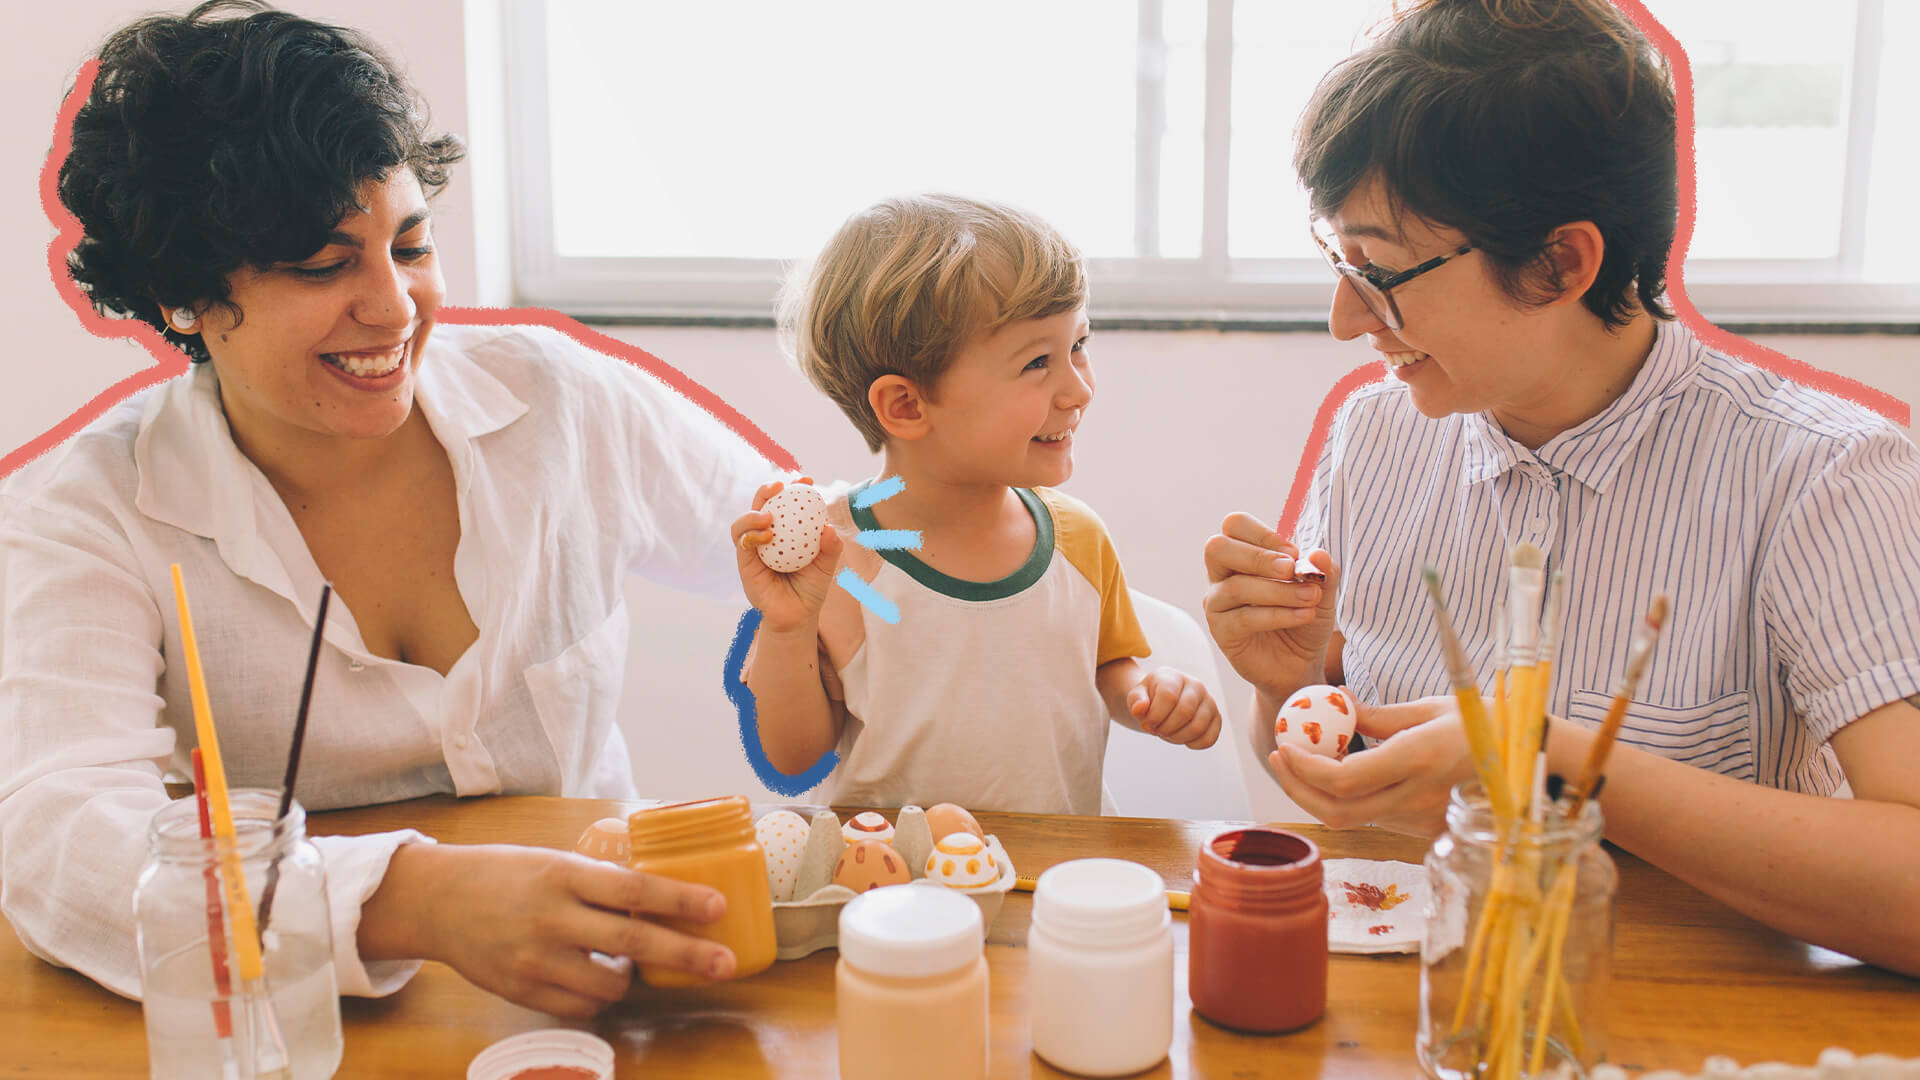 Feriado de páscoa: na foto, uma família de duas mamães e um menino pintam ovos para a páscoa. Elas têm pele branca e cabelos escuros, enquanto o menino é loiro. Todos sorriem. A imagem possui intervenções de rabiscos coloridos.